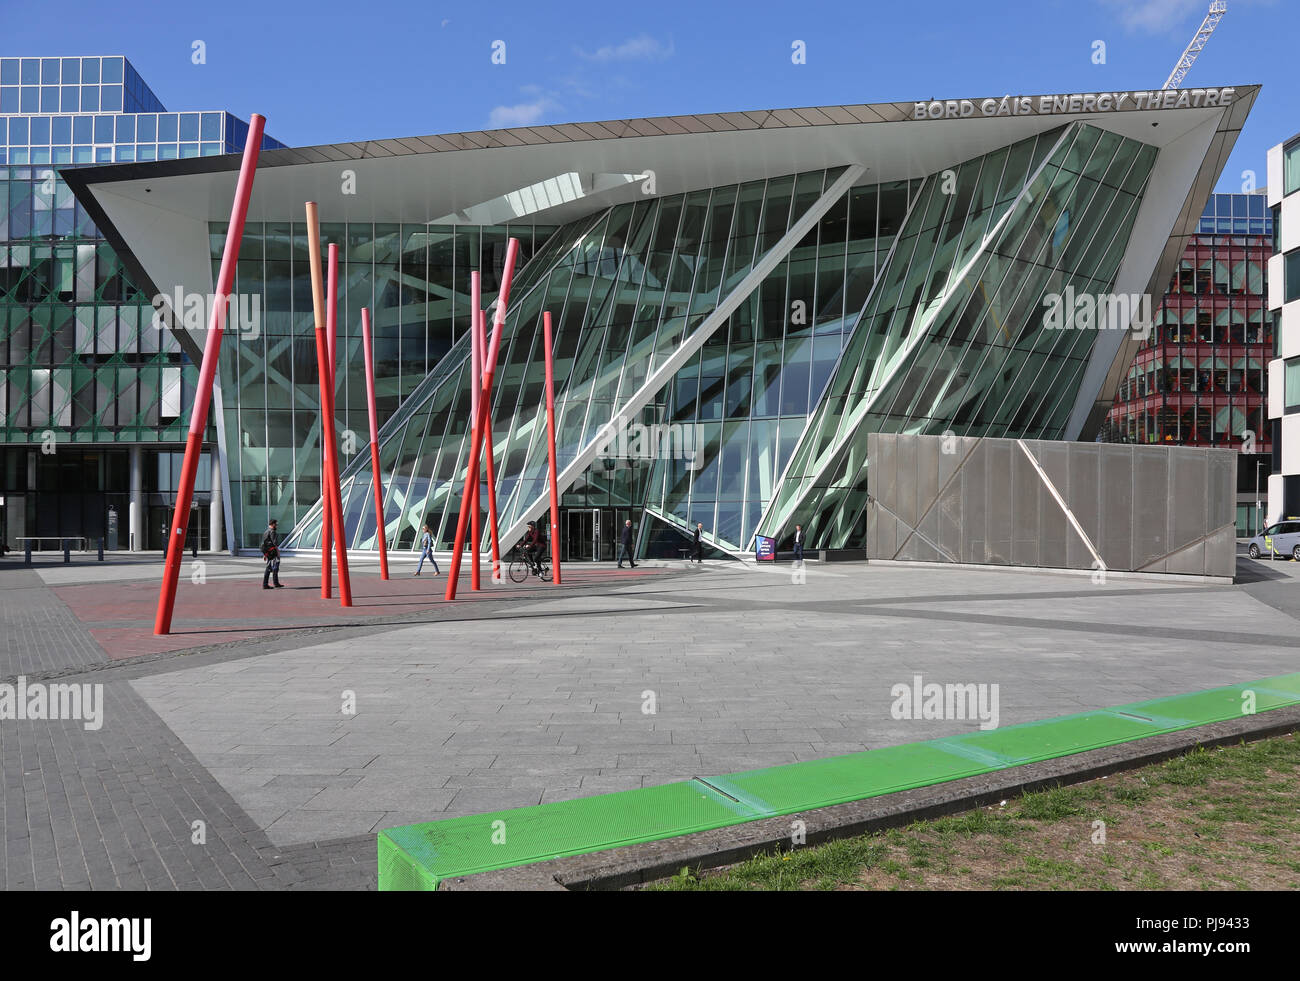 La façade du Théâtre Bord Gais Energy, Dublin, conçu par l'architecte Daniel Libeskind. Banque D'Images